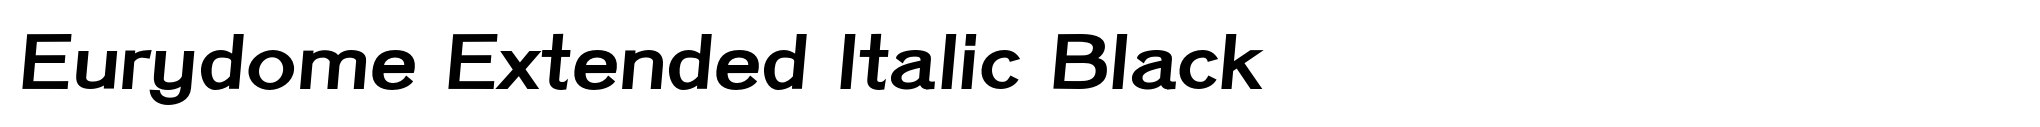 Eurydome Extended Italic Black image